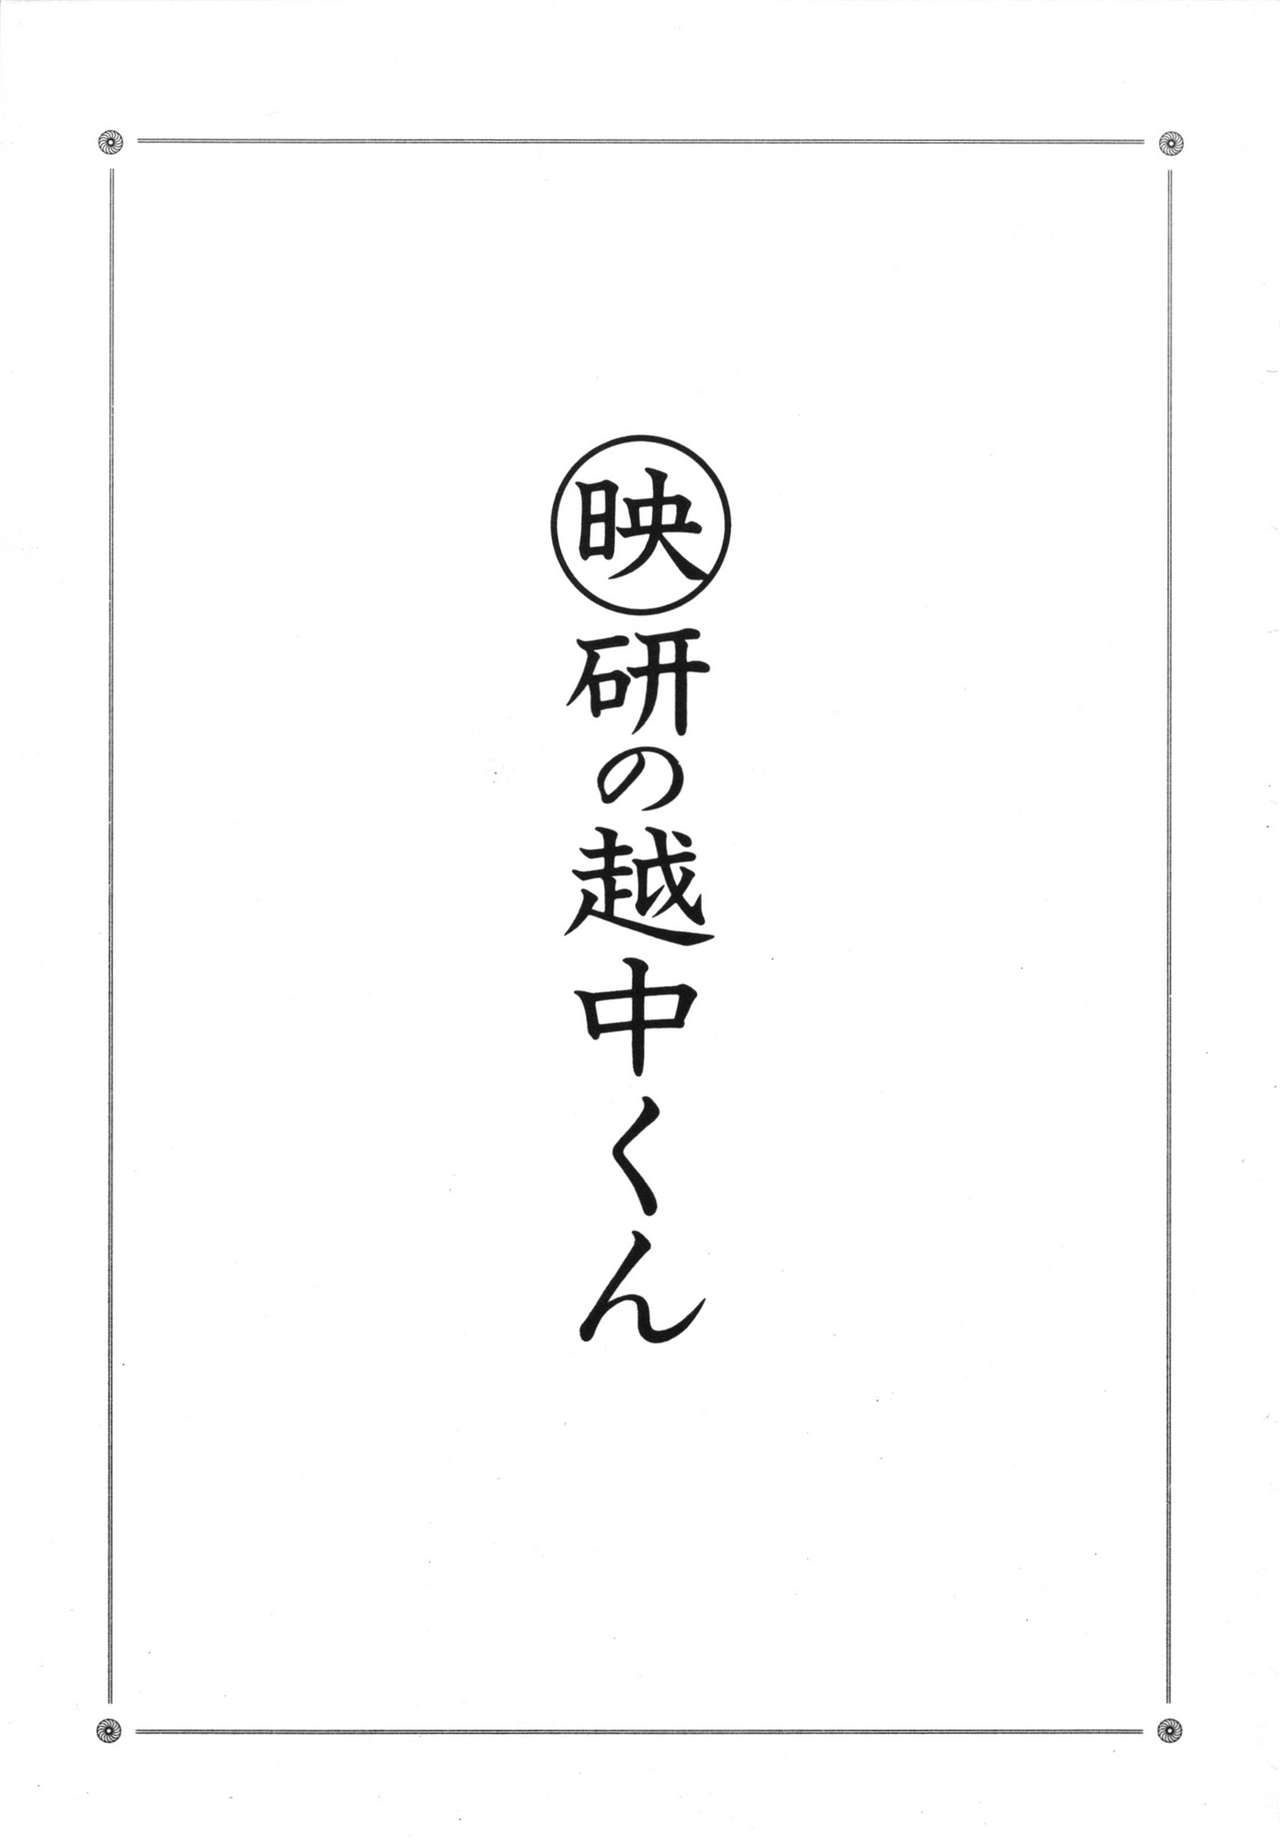 [Giyugun] Eiken no Koshinakakun 1 [戯遊群] 映研の越中くん 1